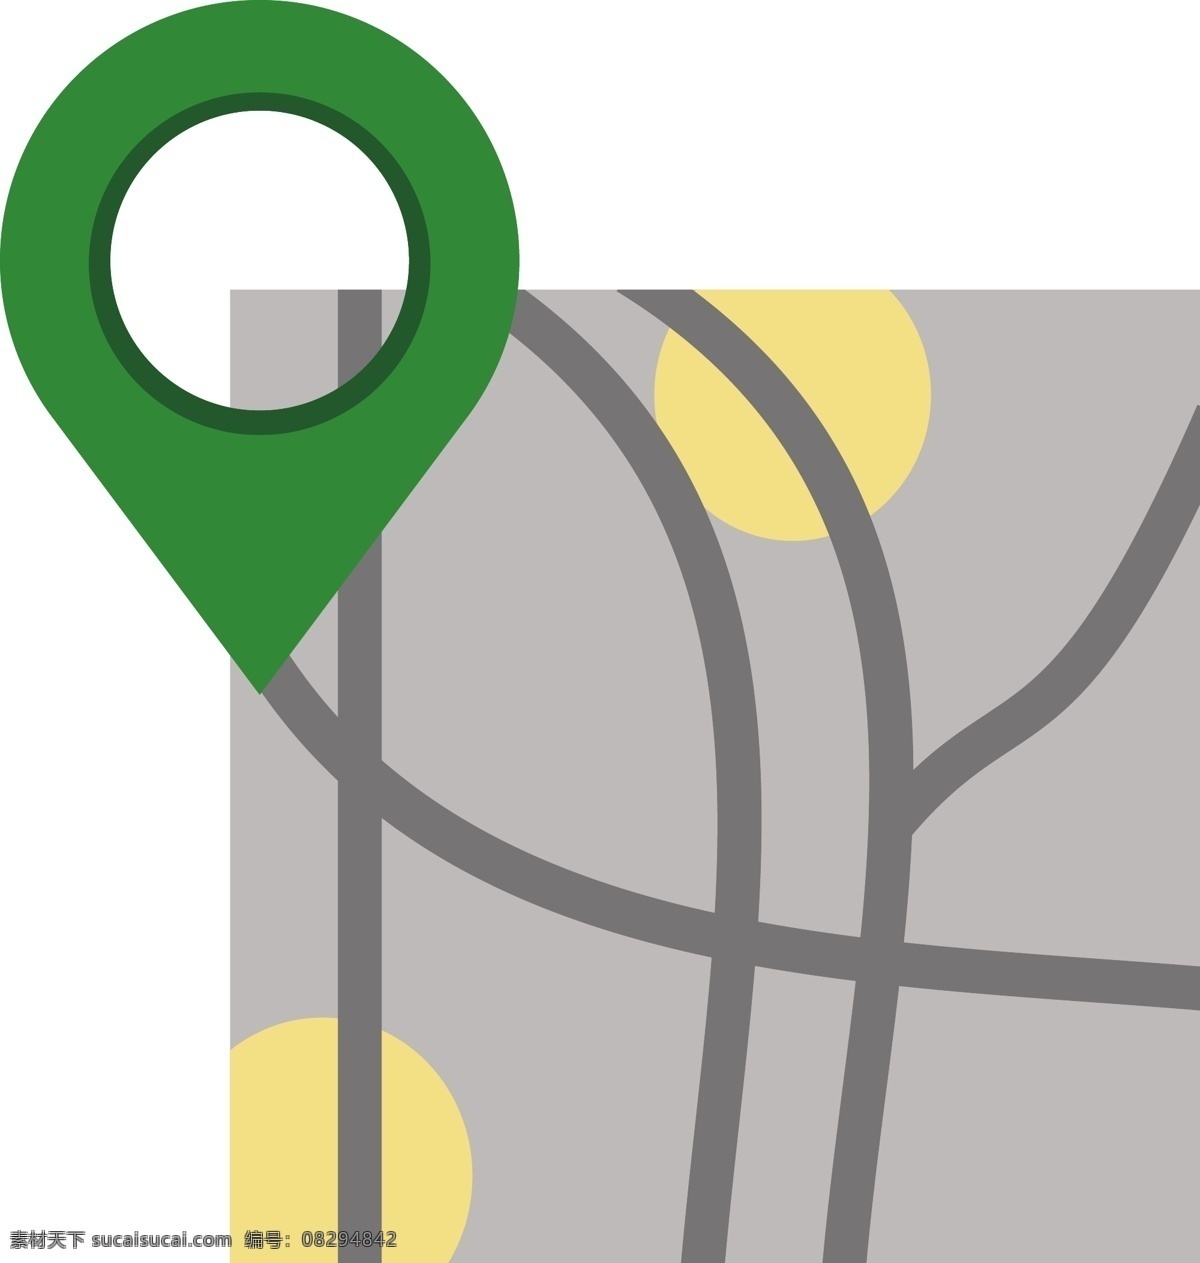 位置图片 ui 标识 标志 图标 矢量 定位 坐标 地球 互联网 位置 导航 指南针 方向 箭头 道路 旅游手册 指示牌 路牌 导向牌 手机 搜索 目标 目的 目的地 地点 标志图标 网页小图标